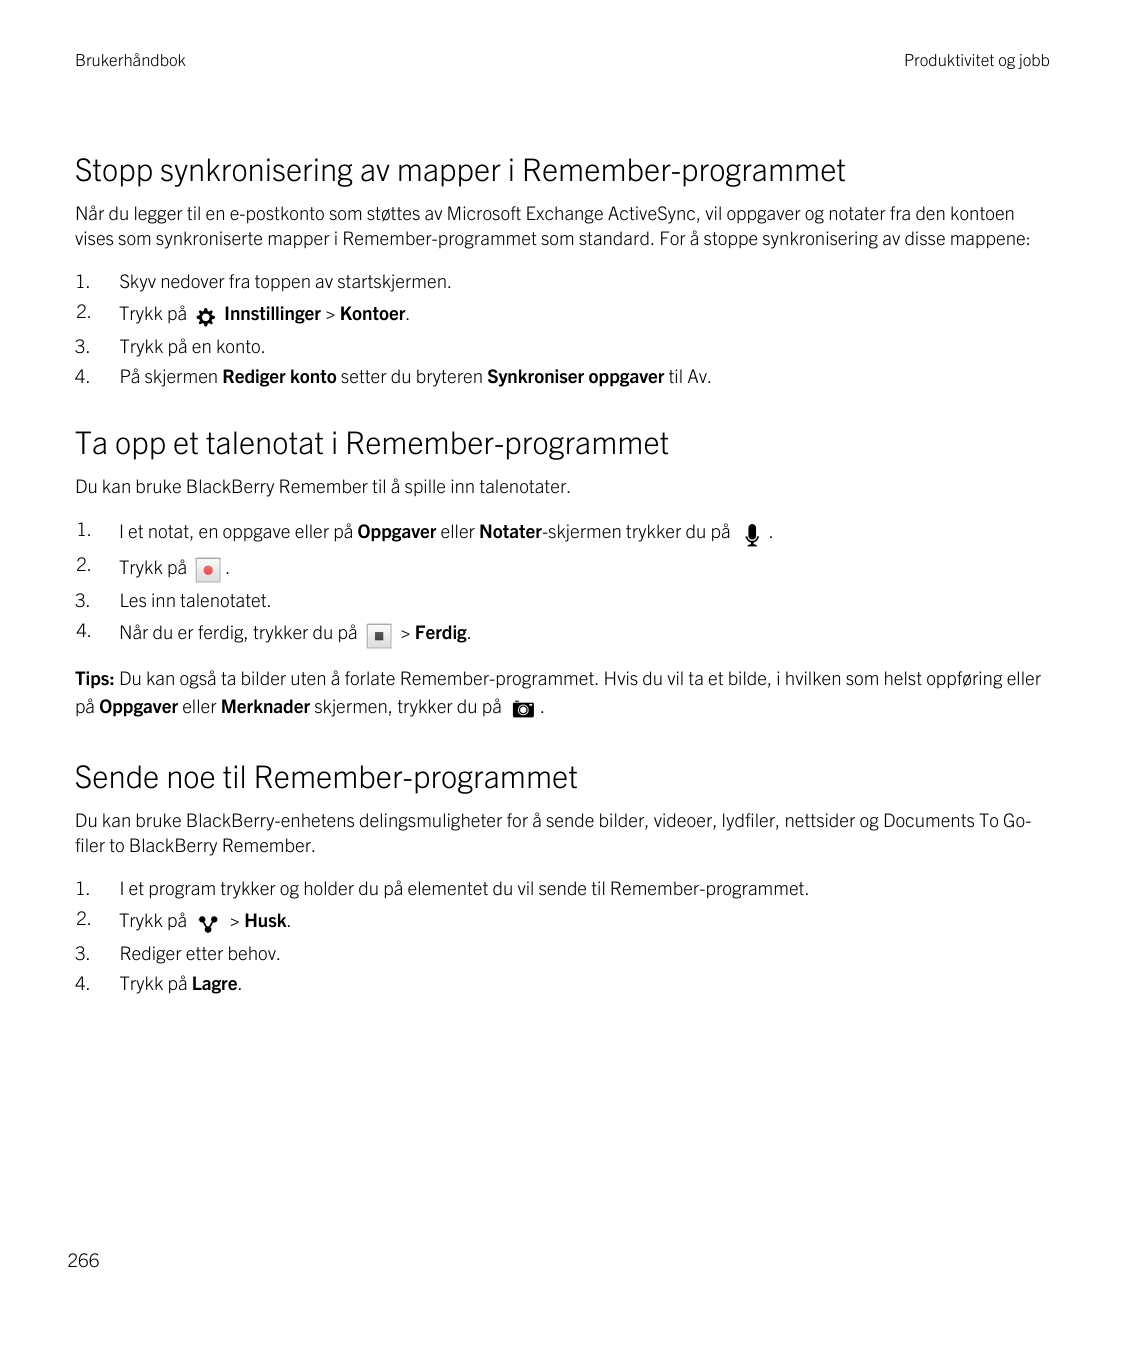 BrukerhåndbokProduktivitet og jobbStopp synkronisering av mapper i Remember-programmetNår du legger til en e-postkonto som støtt